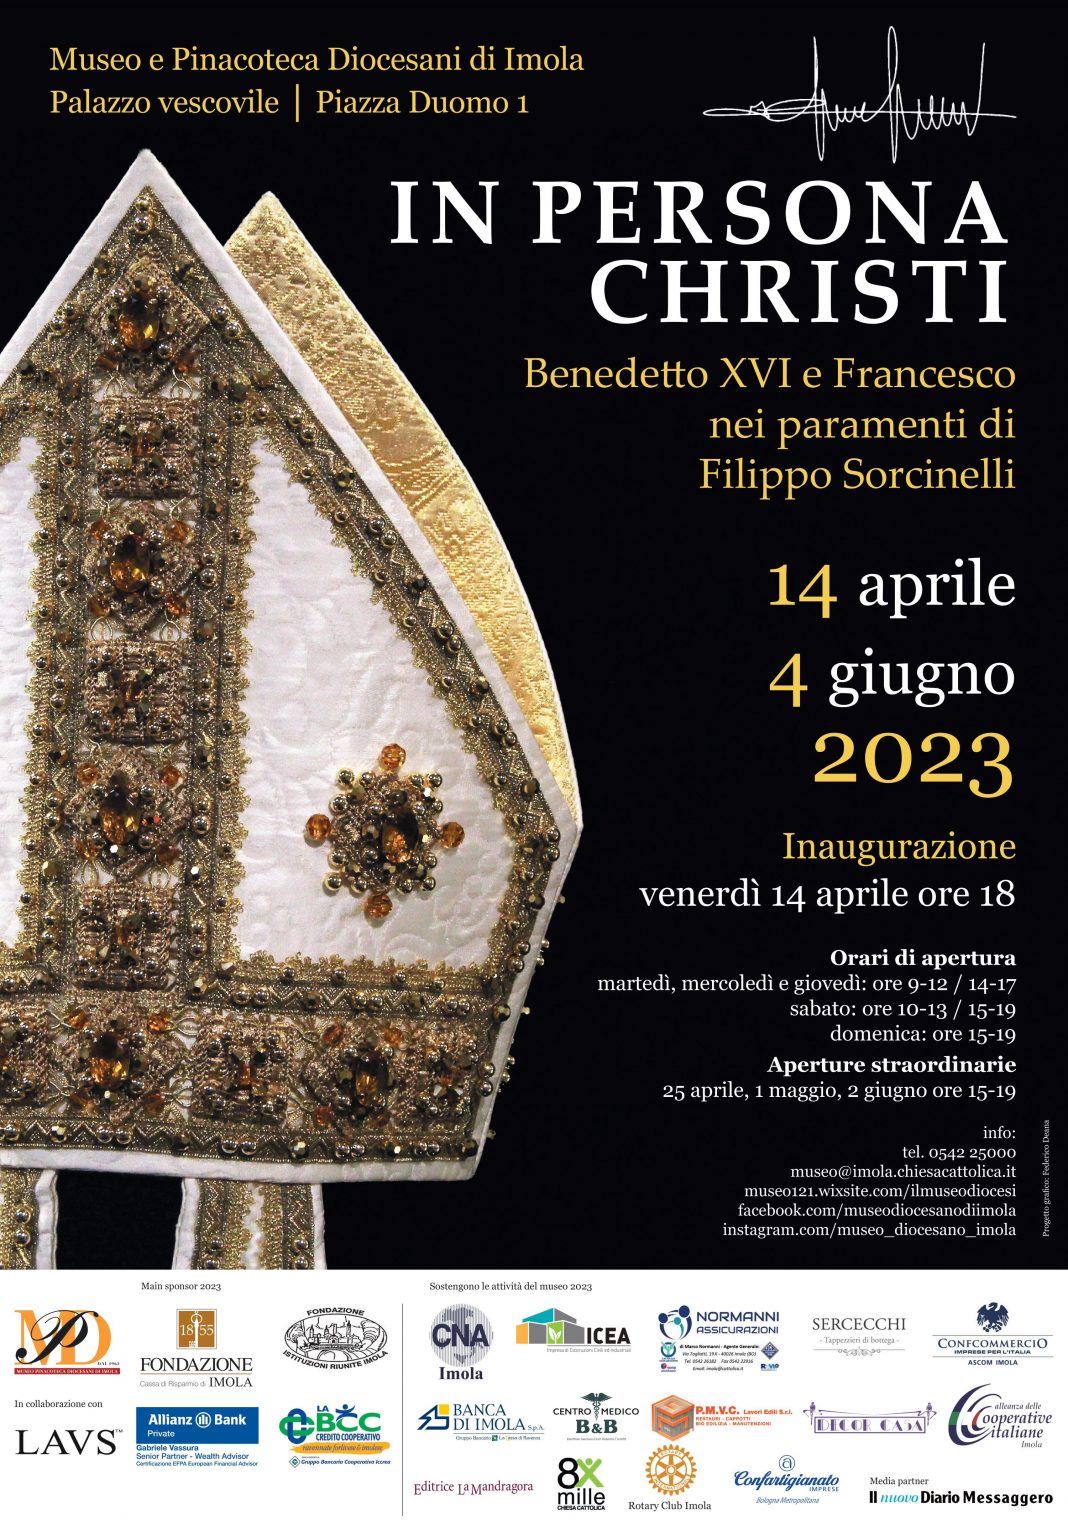 IN PERSONA CHRISTI. Benedetto XVI e Francesco nei paramenti di Filippo Sorcinellihttps://www.exibart.com/repository/media/formidable/11/img/bf6/manifesto-sorcinelli-scelto_1-1068x1526.jpg